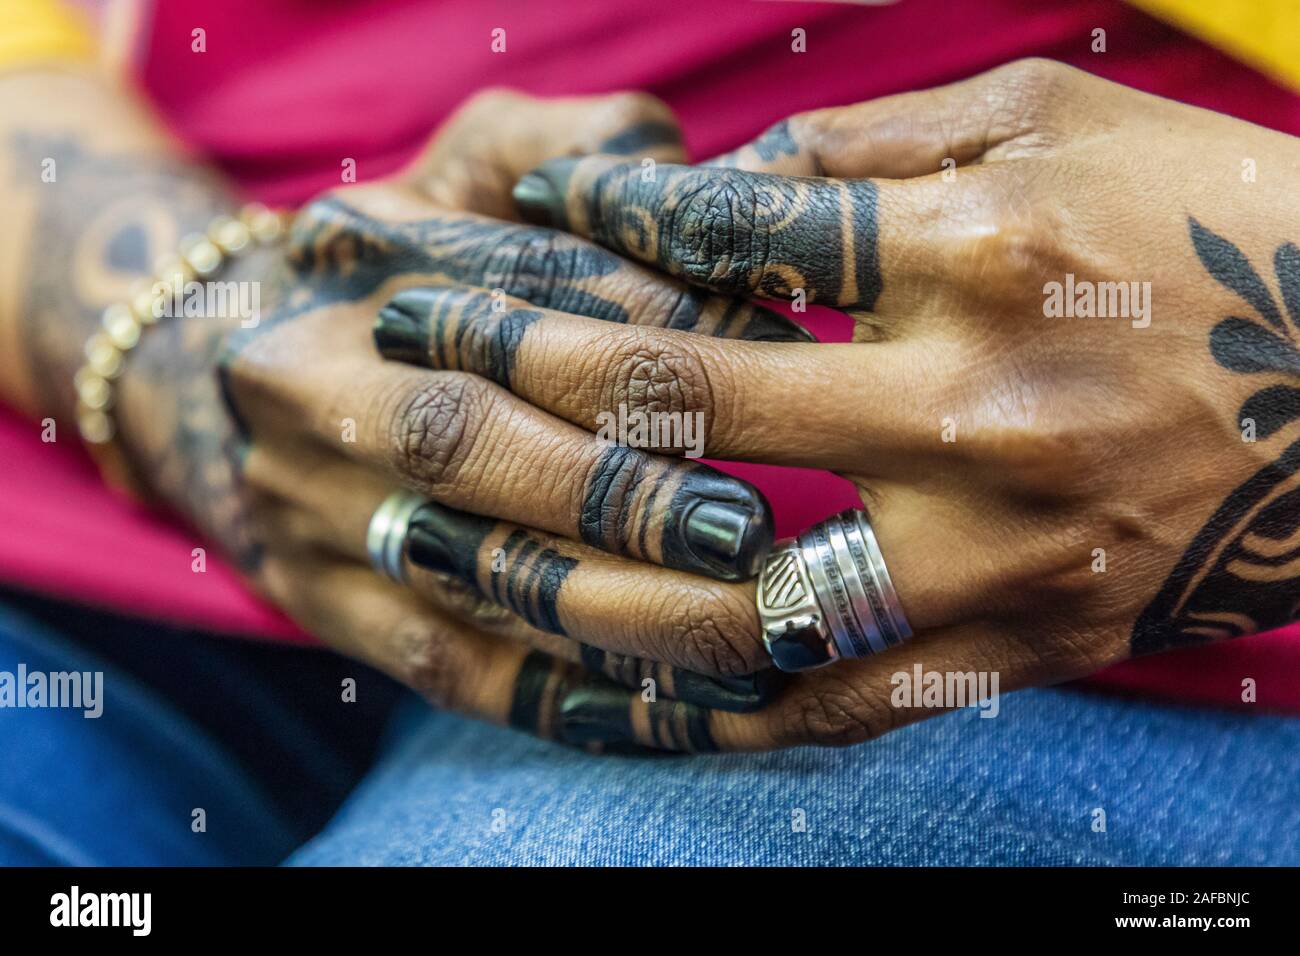 Afrika, Ägypten, Luxor. September 21, 2018. Weibliche Hände mit Henna Anwendung. Stockfoto